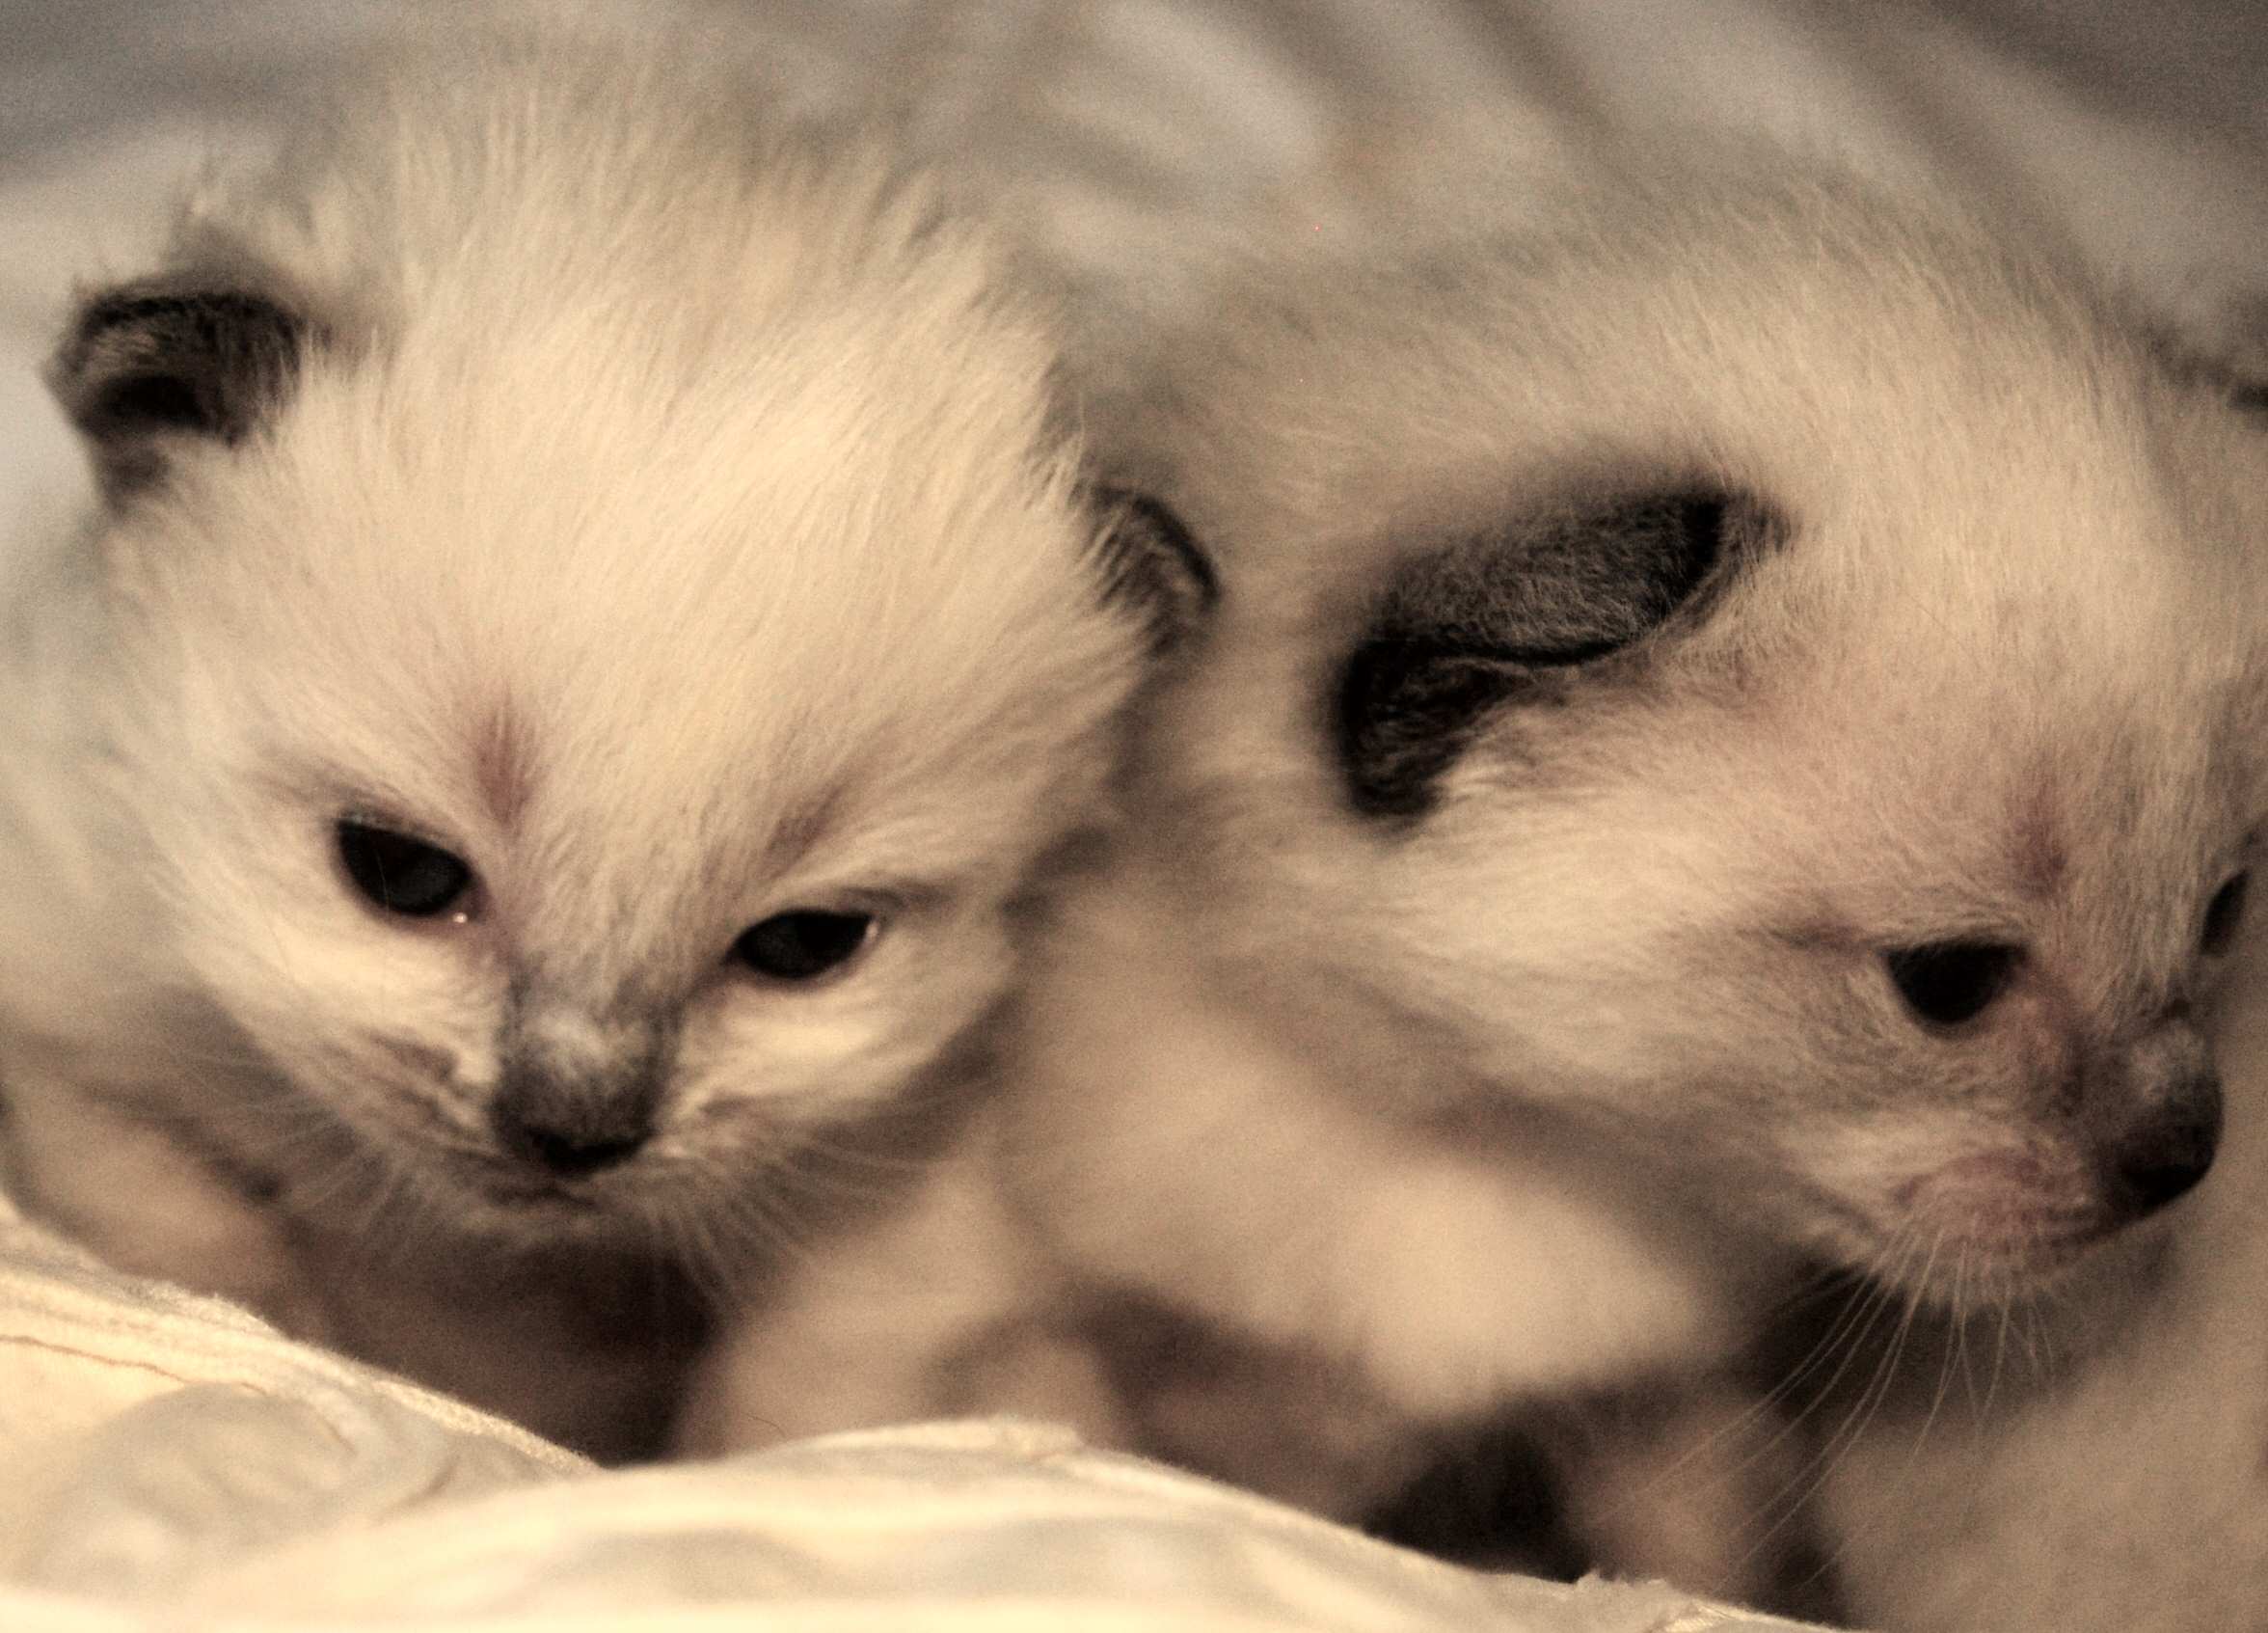 new kittens